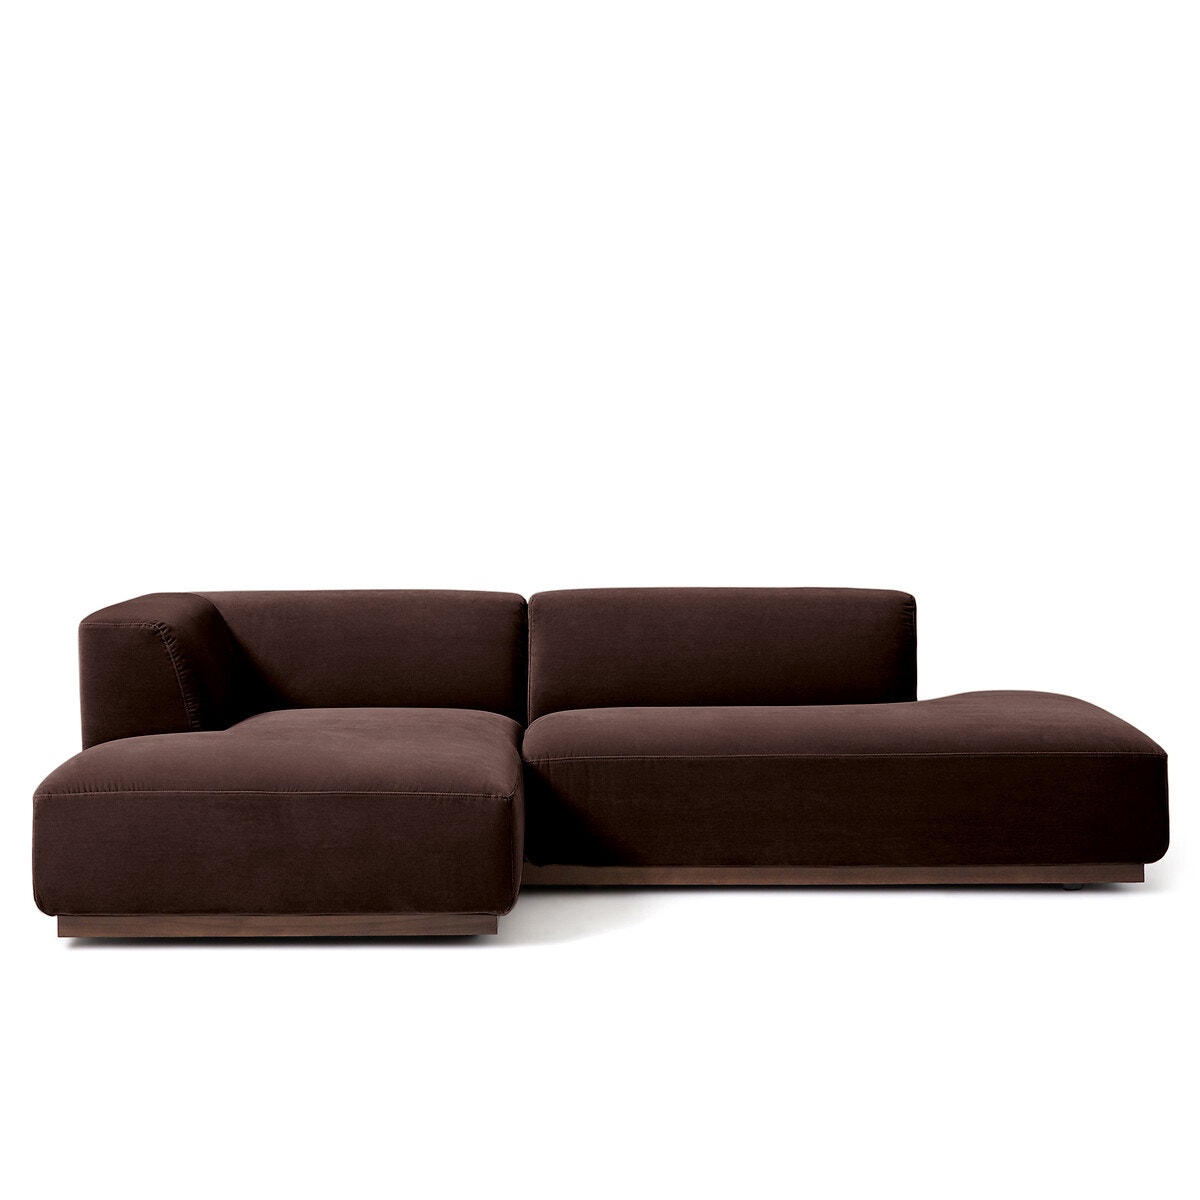 Γωνιακός καναπές XL από βελούδο, Jacopo